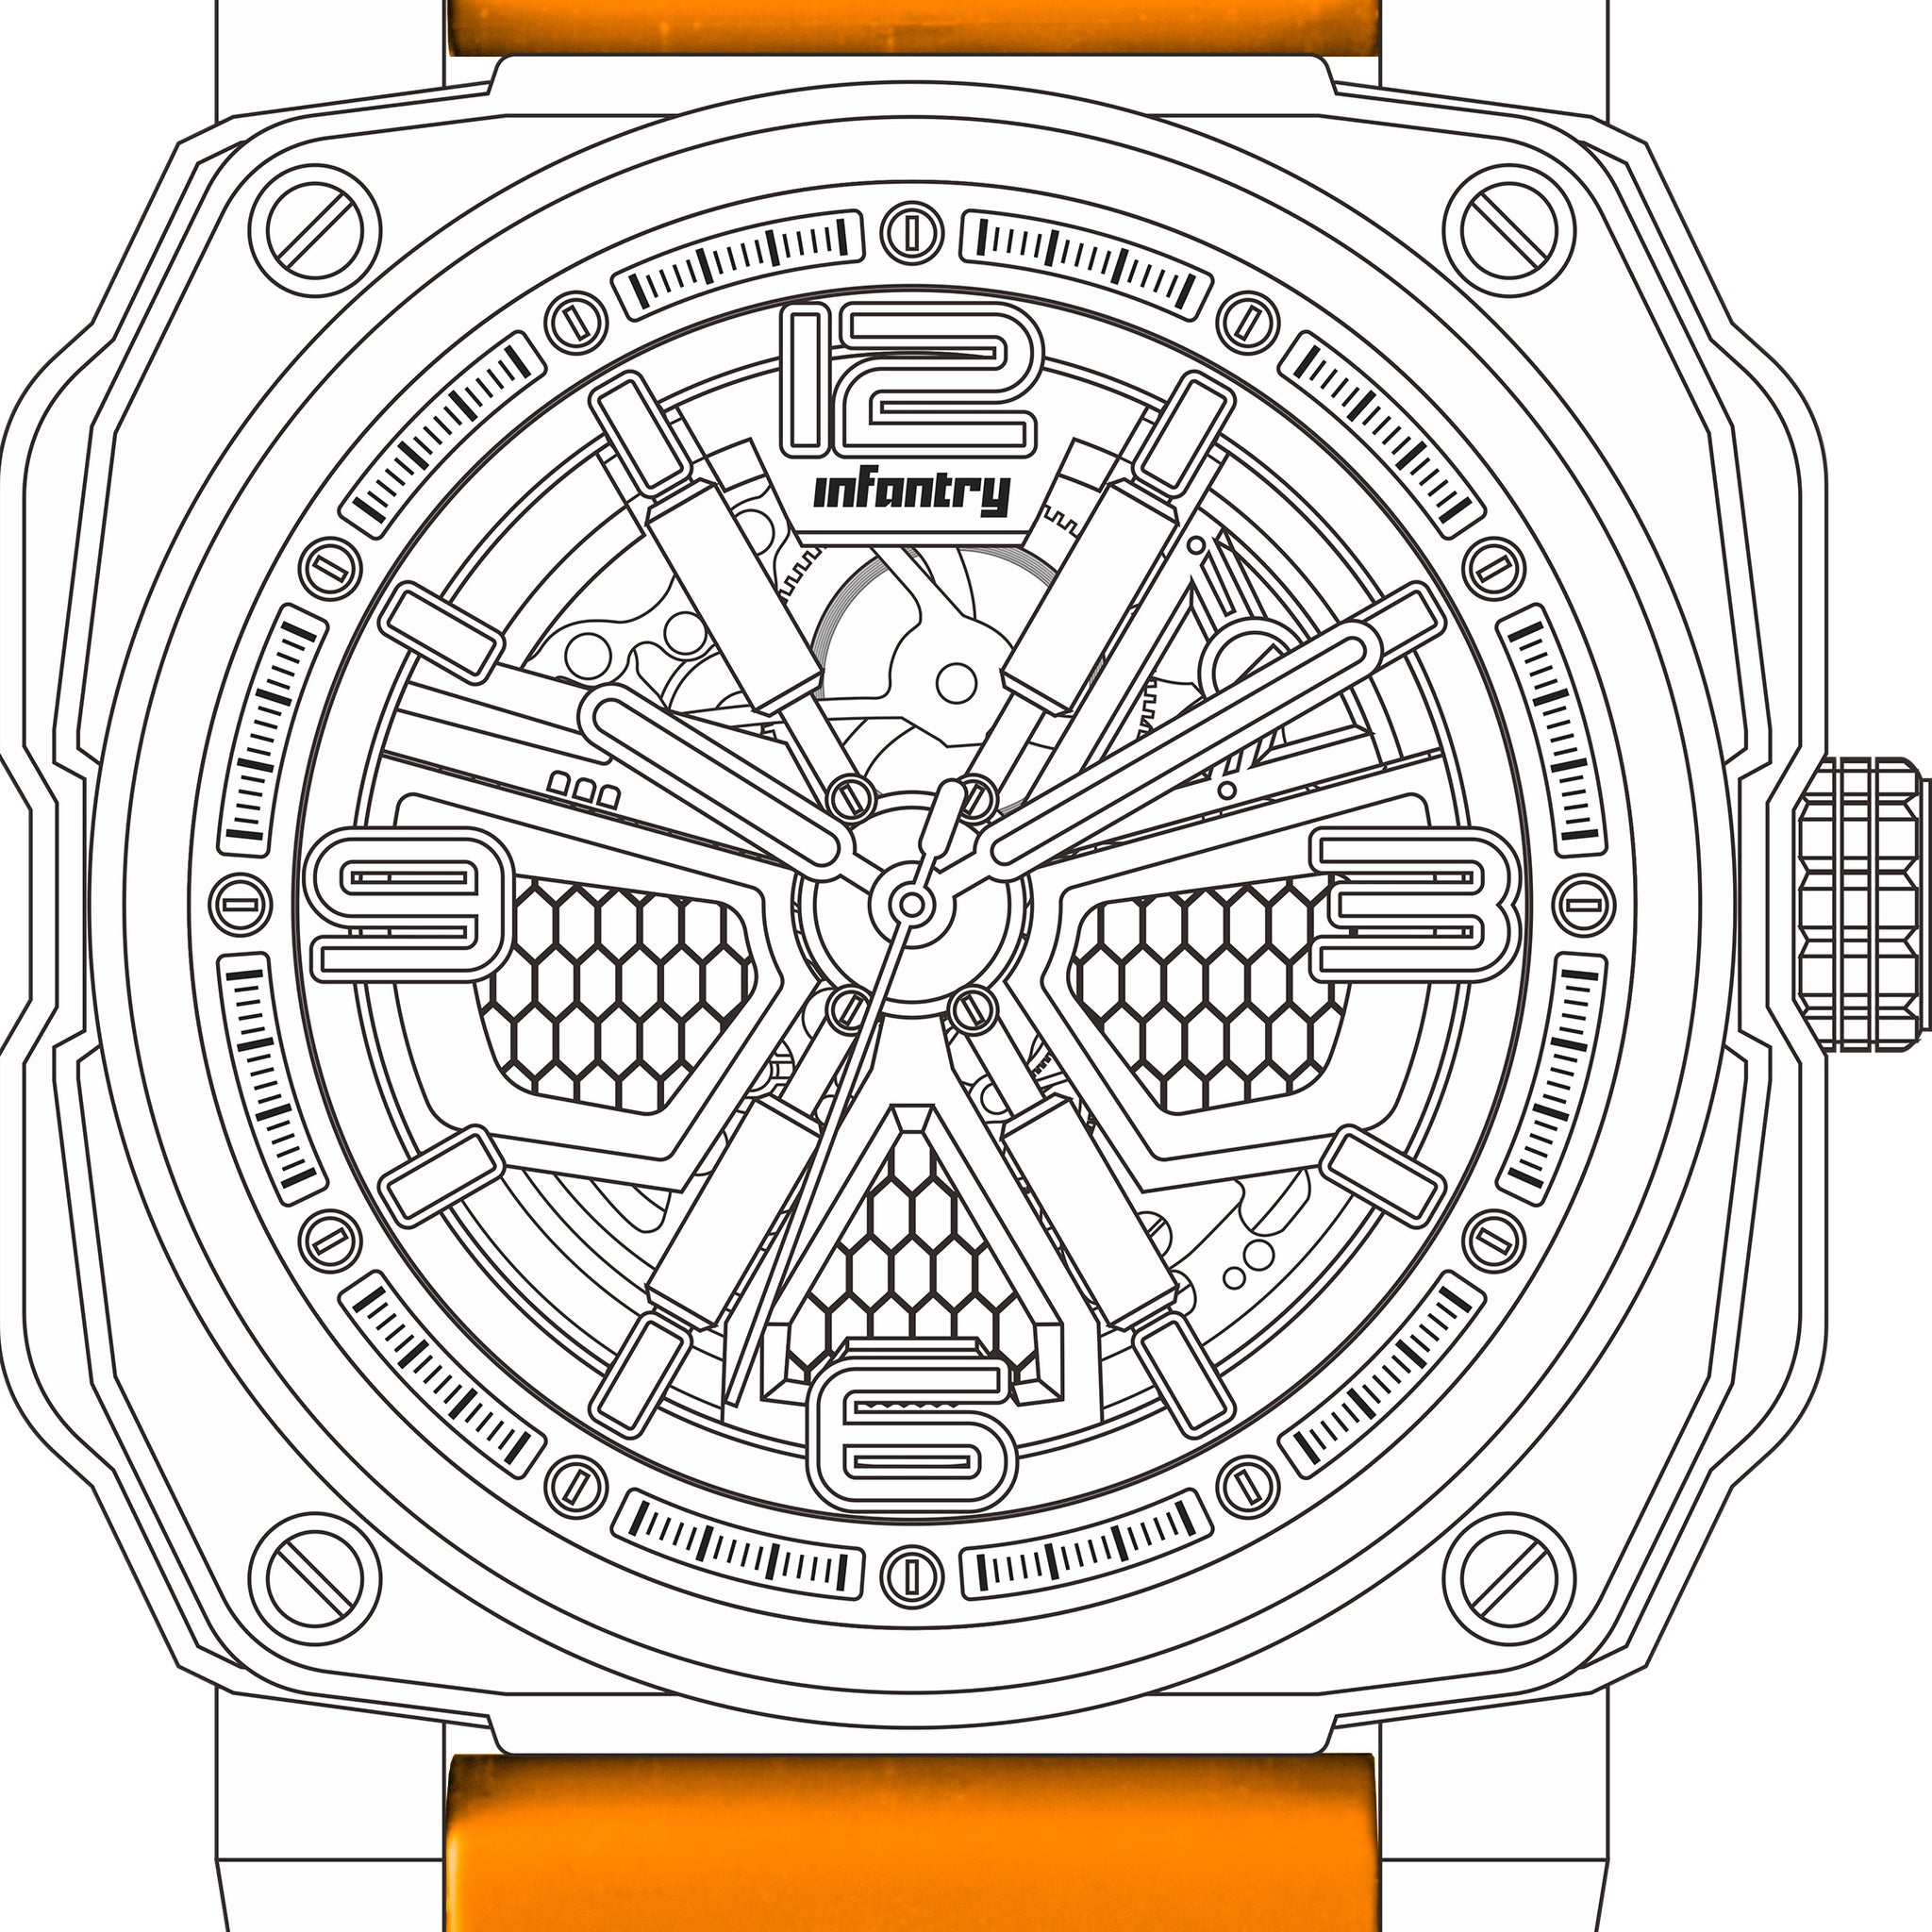 MOD 47 watch strap - Orange